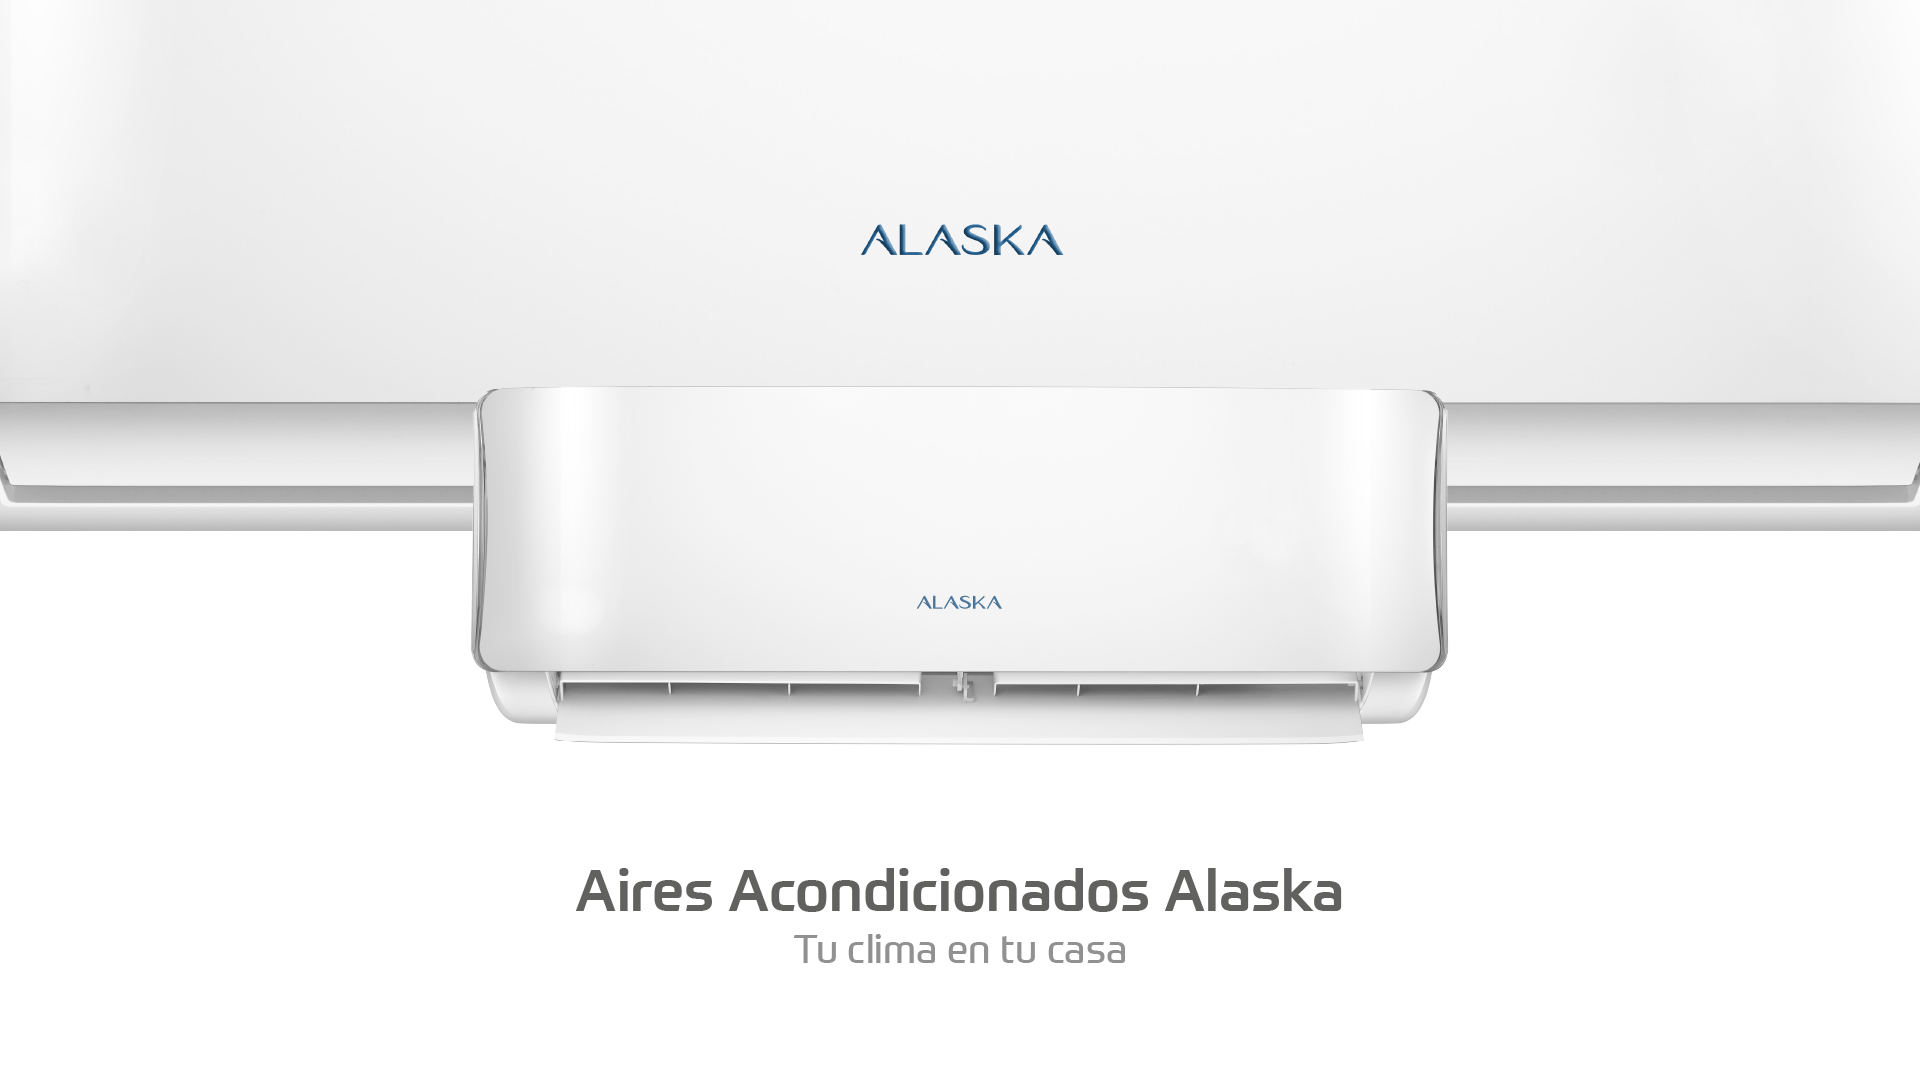 Aire acondicionado con le logo nuevo de la marca Alaska